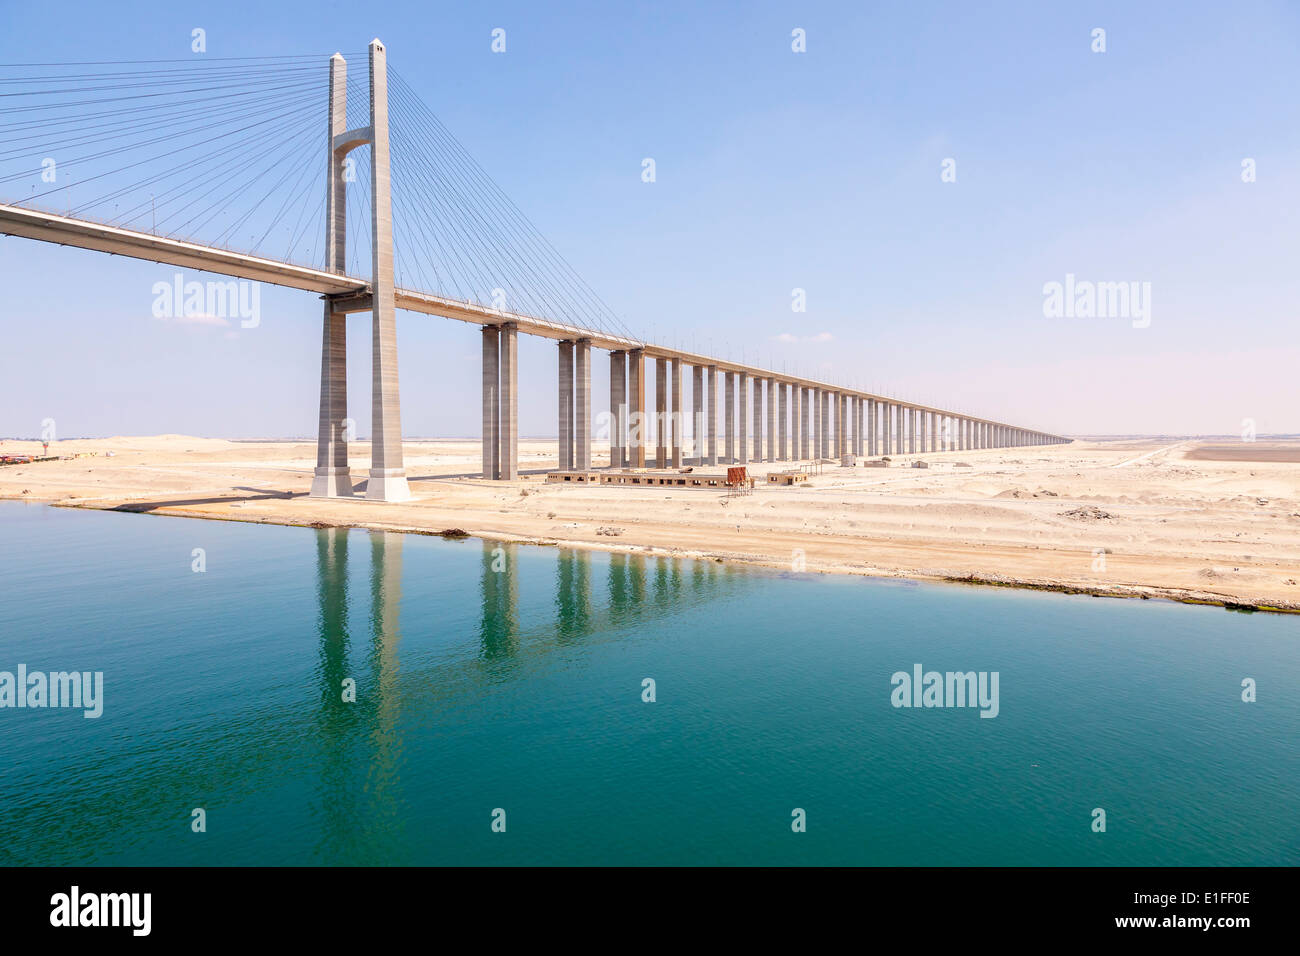 Mubarak-Friedensbrücke, Suezkanal Ägypten. Stockfoto